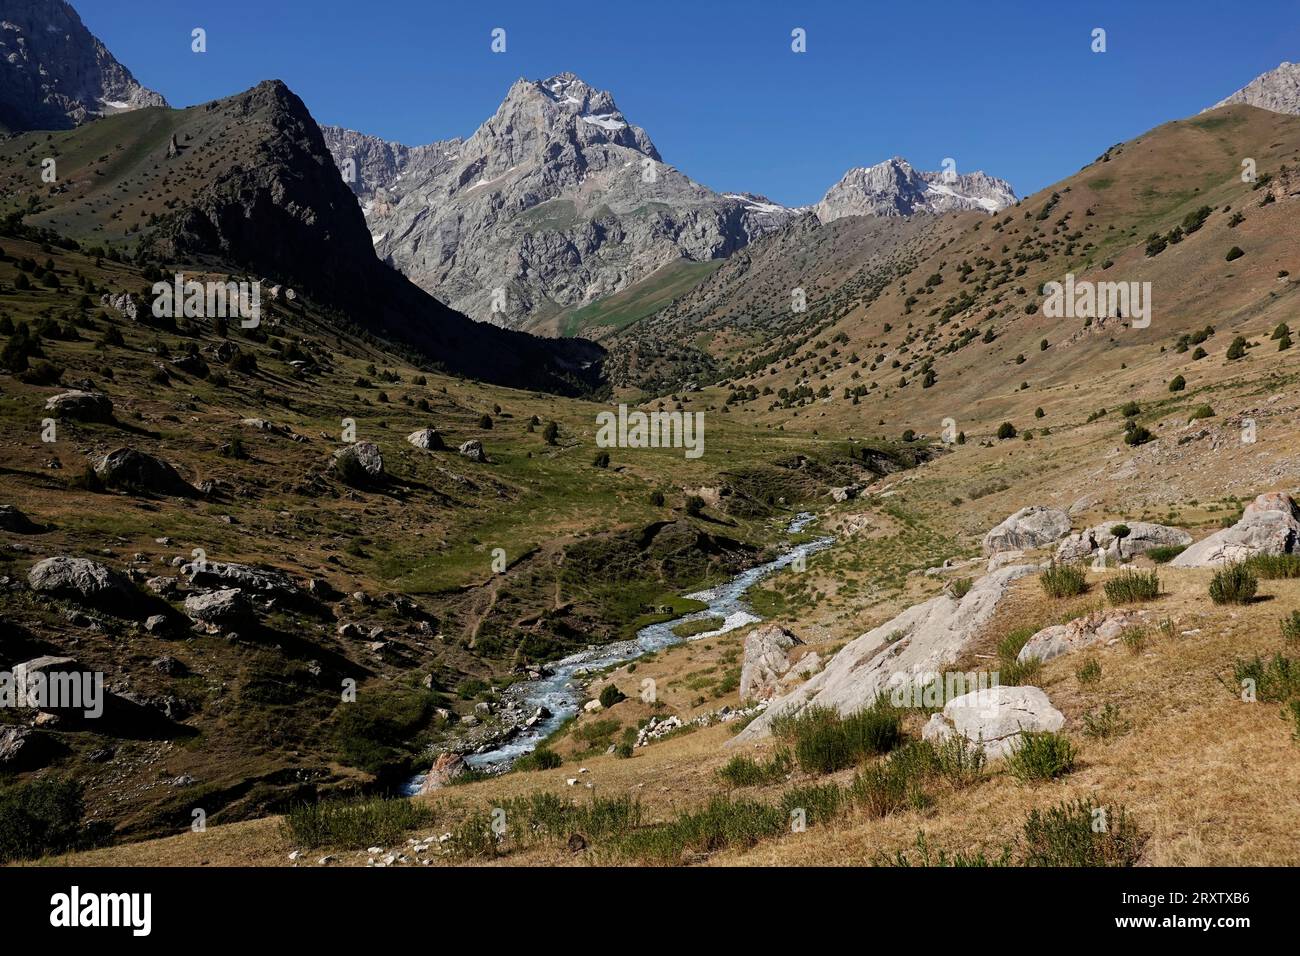 Les montagnes reculées et spectaculaires de Fann, une partie de l'ouest du Pamir-Alay, Tadjikistan, Asie centrale, Asie Banque D'Images